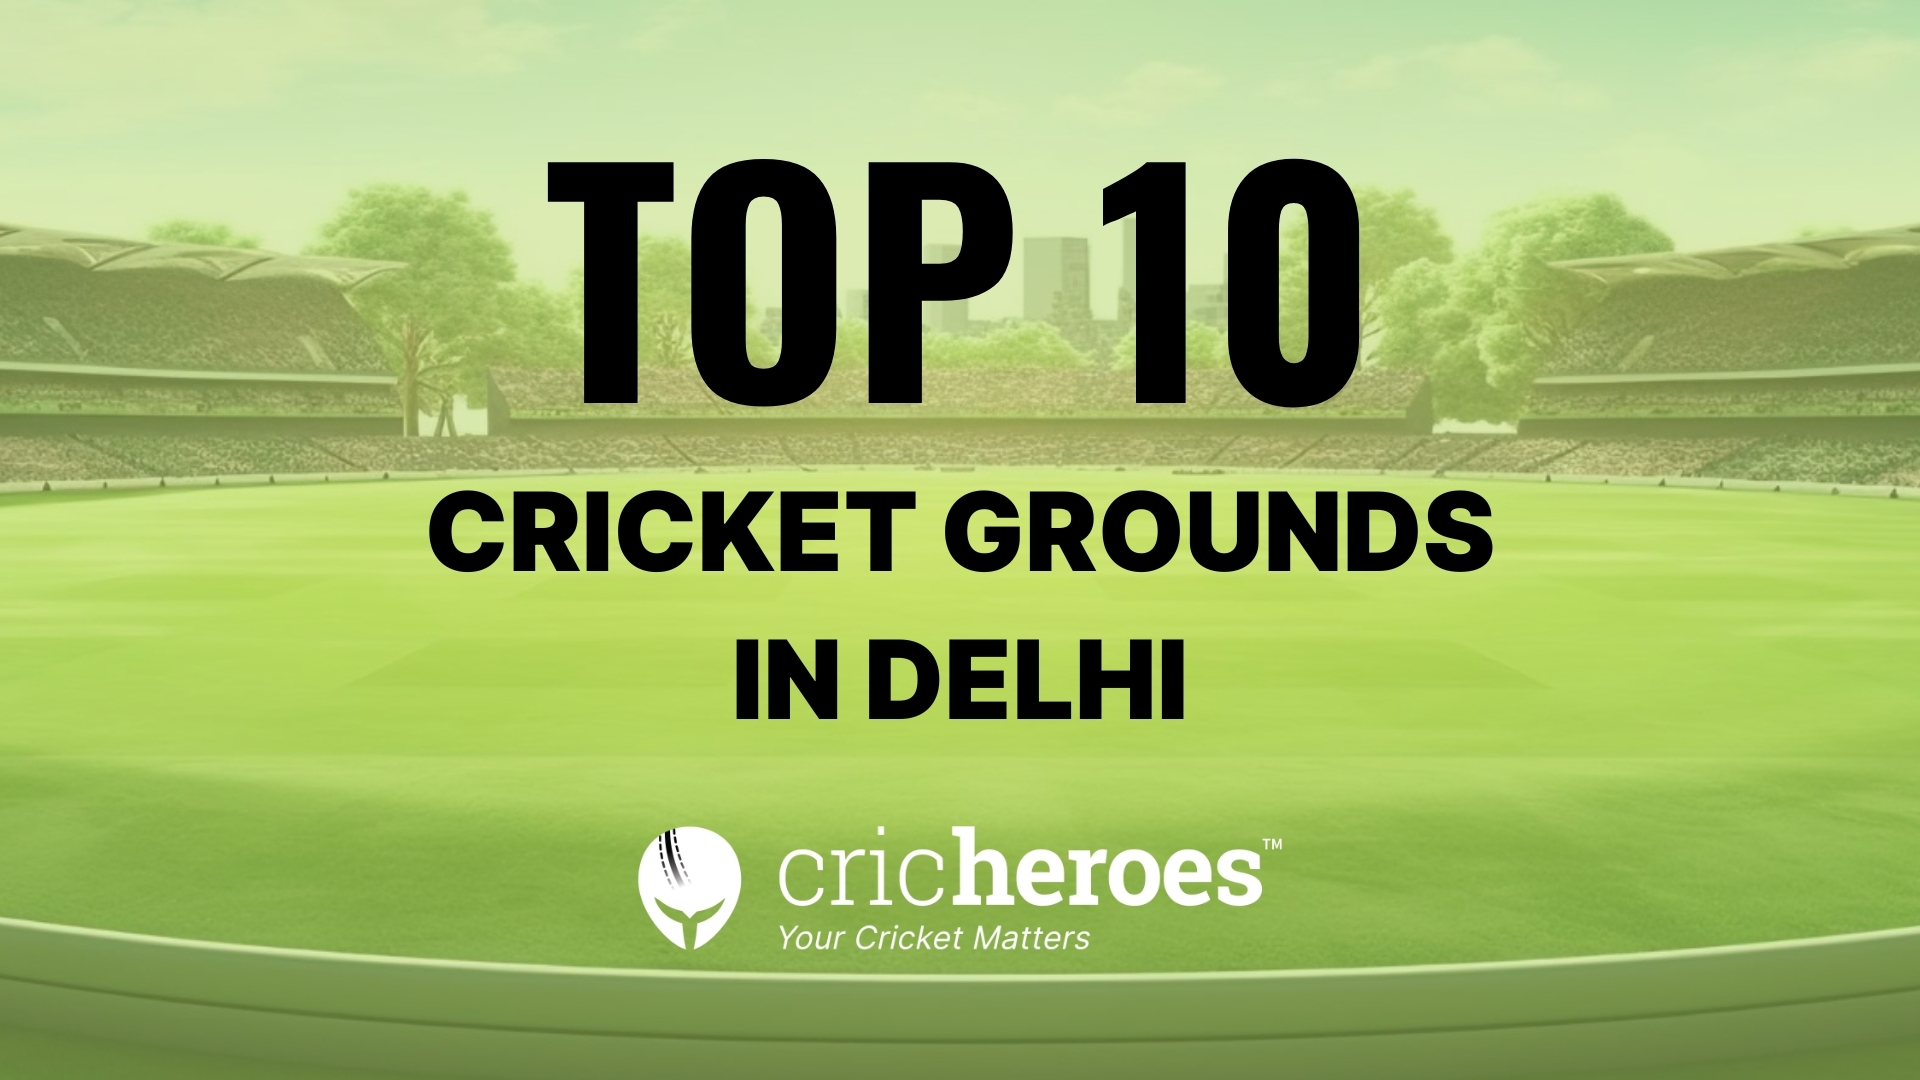 Top 10 Cricket Grounds in Delhi